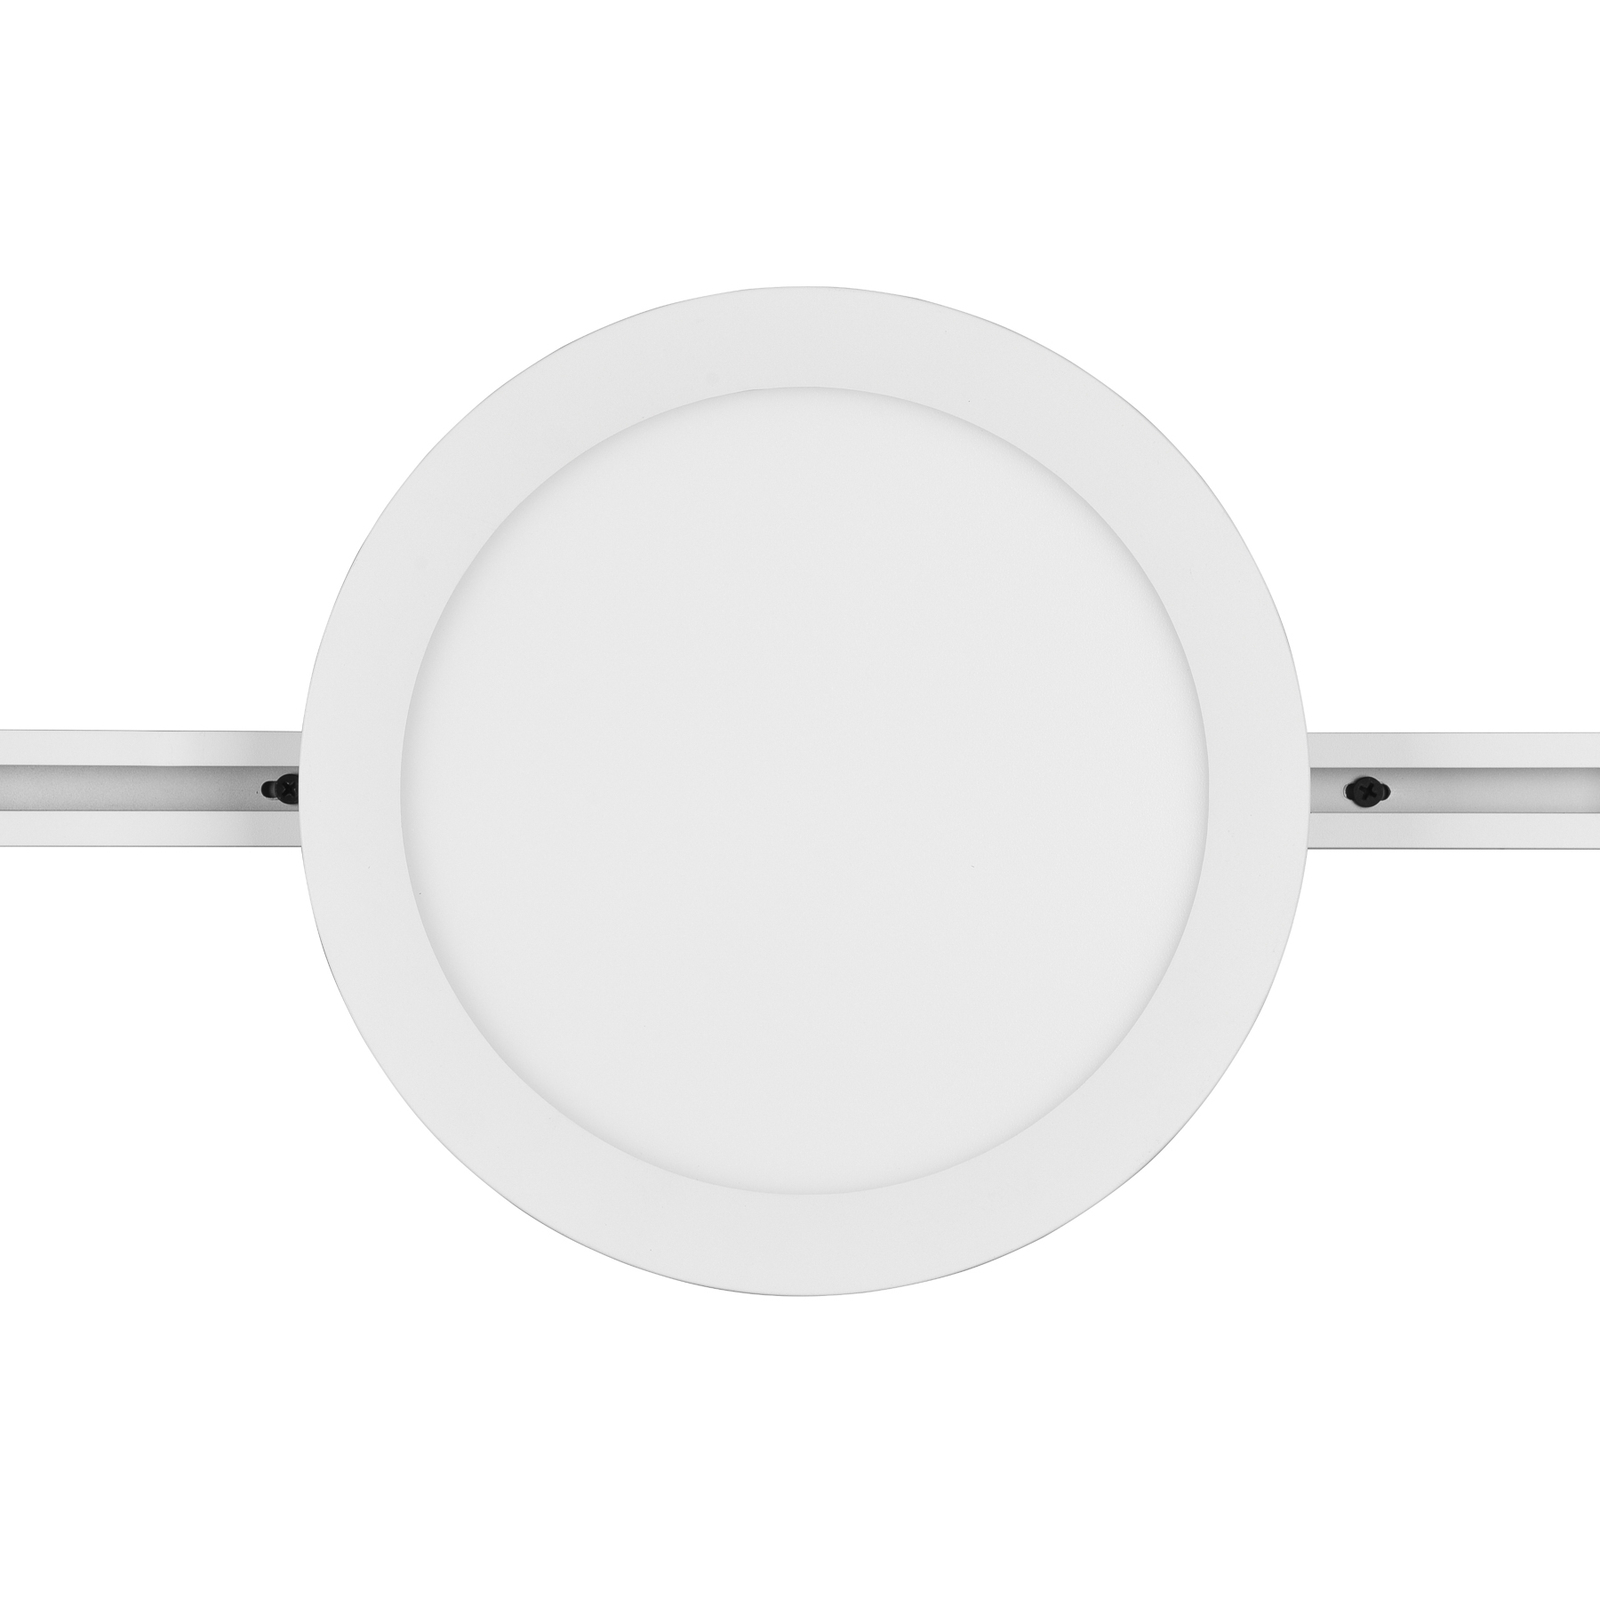 LED stropní svítidlo Camillus DUOline, Ø 26 cm, bílé